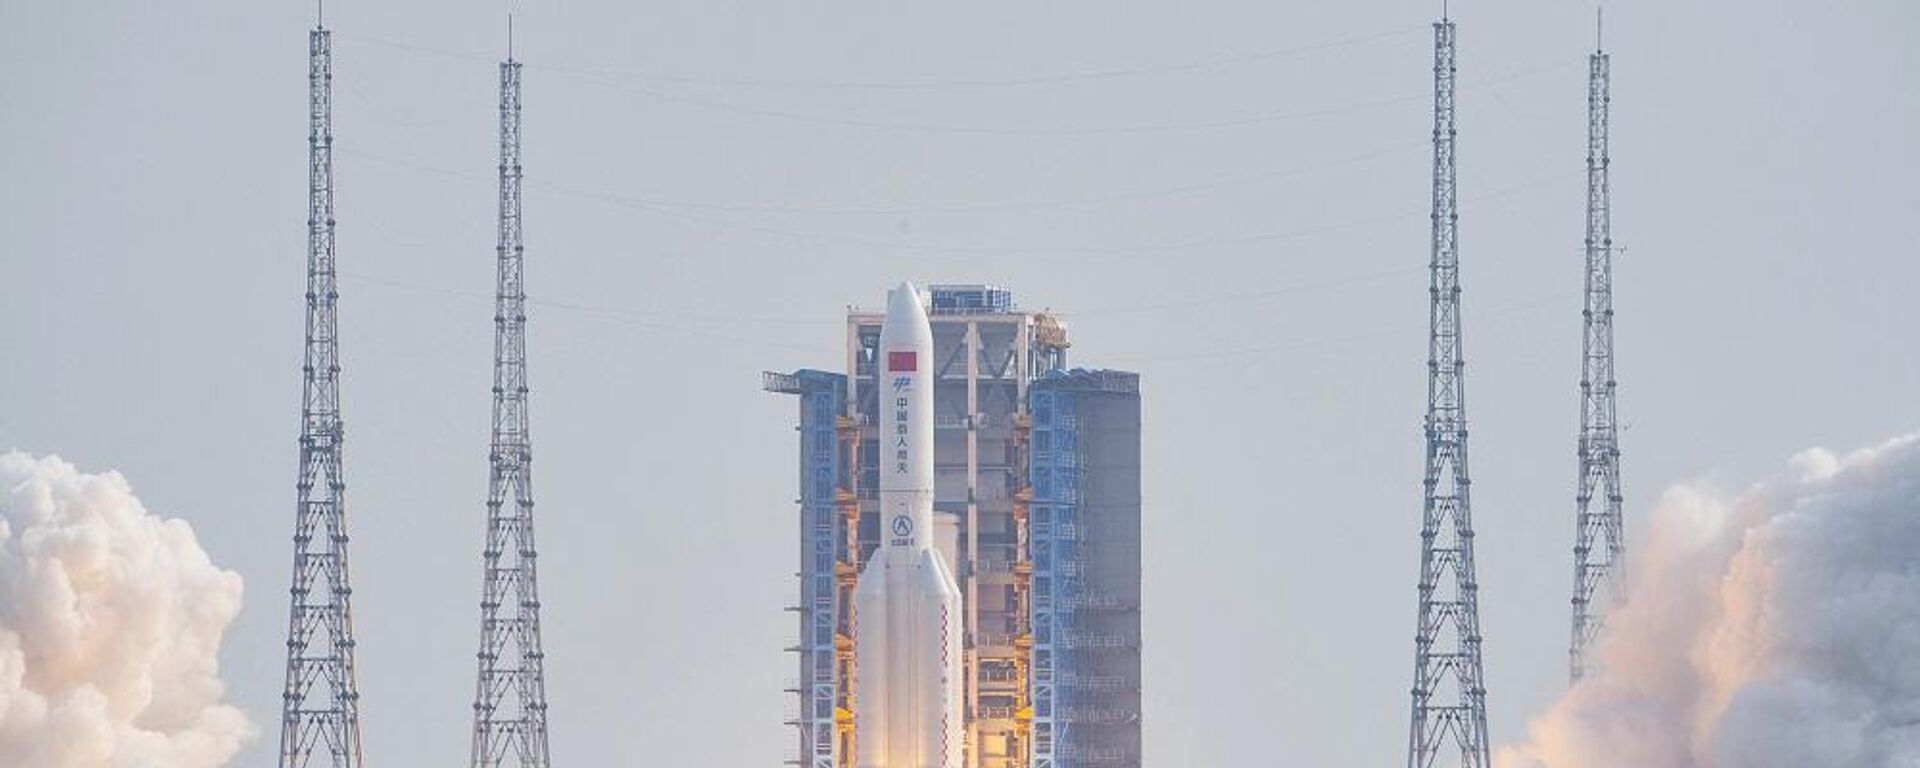 انطلاق صاروخ لونغ مارش 5 ب الذي يحمل وحدة مينغشيان العلمية الصينية، الوحدة النهائية لمحطة تيانغونغ الفضائية، من مركز وينتشانغ في مقاطعة هاينان جنوب الصين، 31 أكتوبر/ تشرين الأول 2022 - سبوتنيك عربي, 1920, 06.06.2023